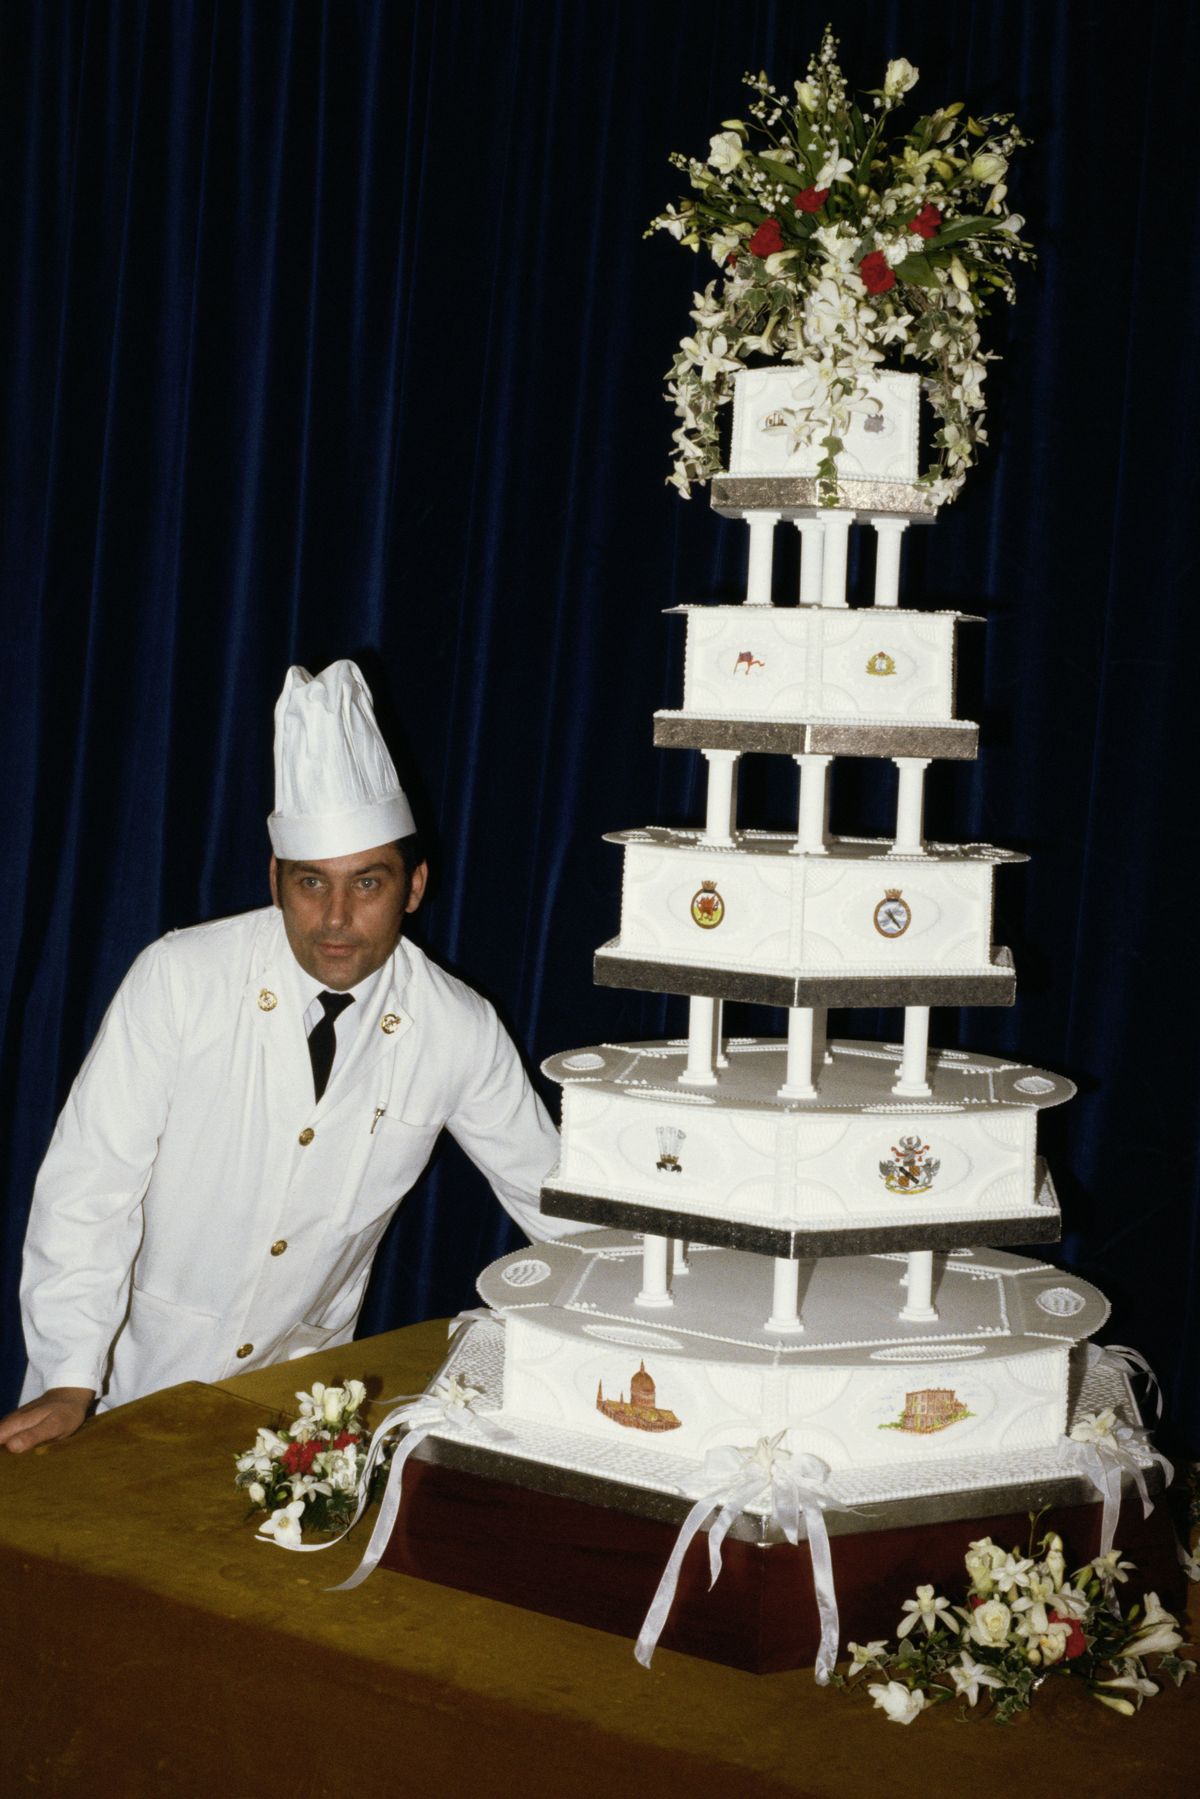 Une part du gâteau de mariage de la princesse Diana vendue pour une somme colossale